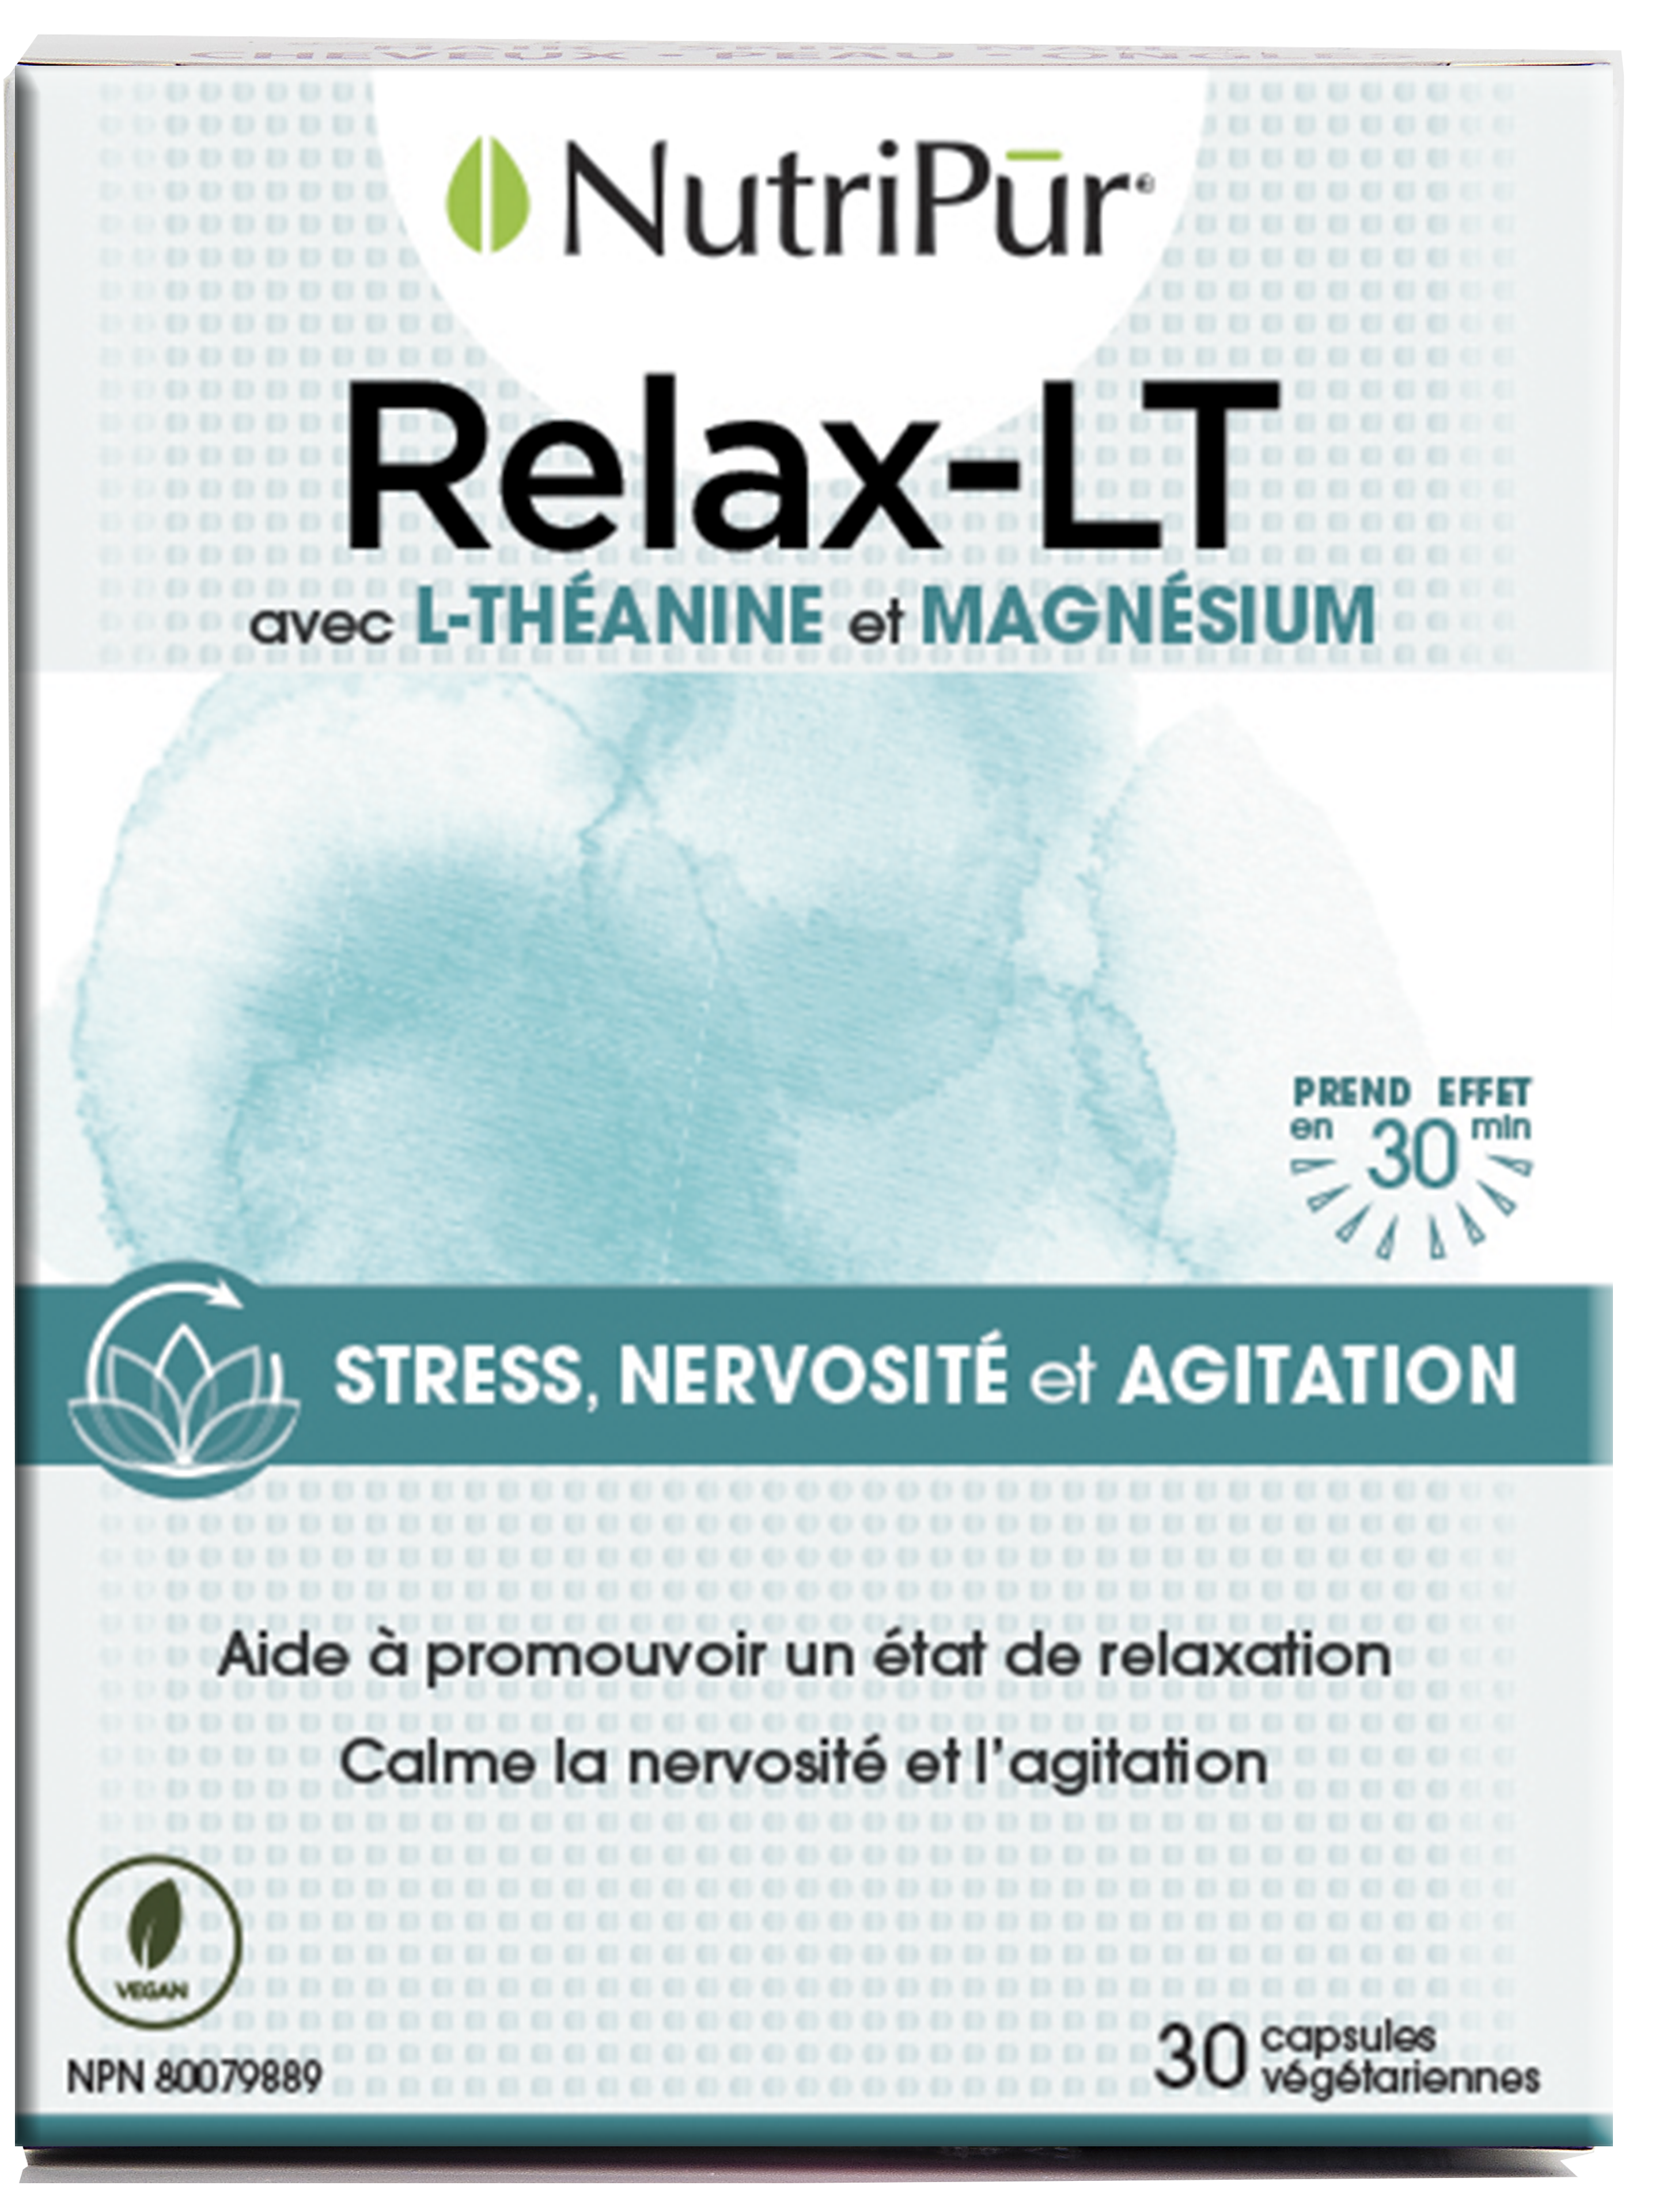 Relax - Lt - Nutripur - avec  L -théanine et magnésium - stress- nervosité et agitation - calm l'agitation